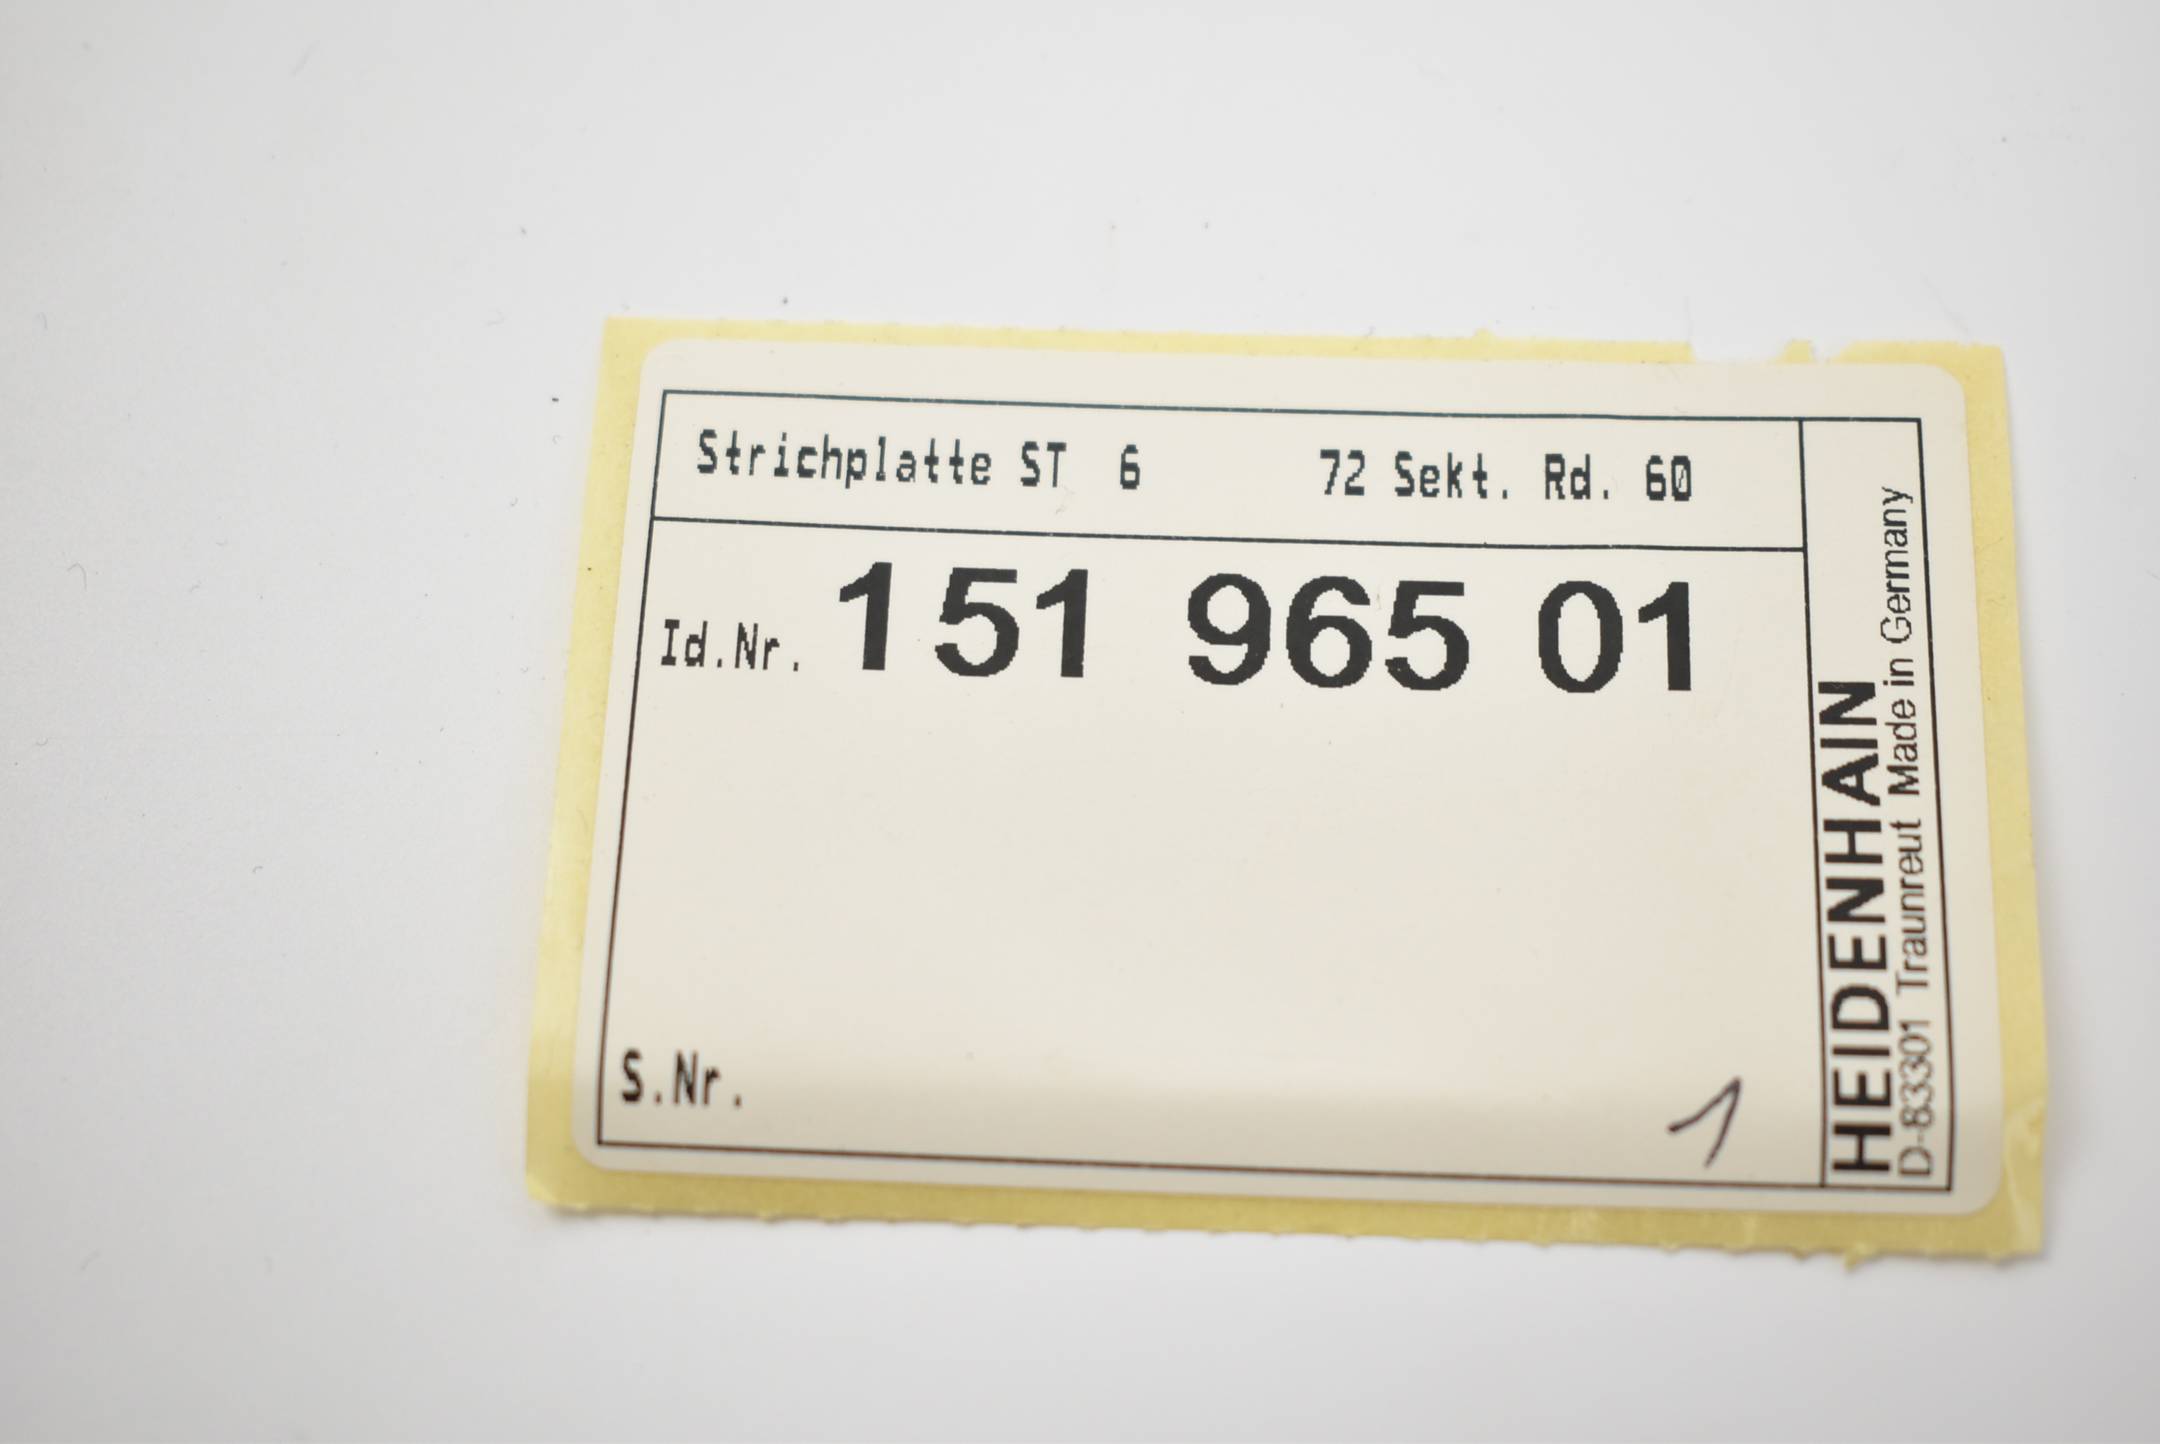 Heidenhain Strichplatte ST 6 ( 15196501 )